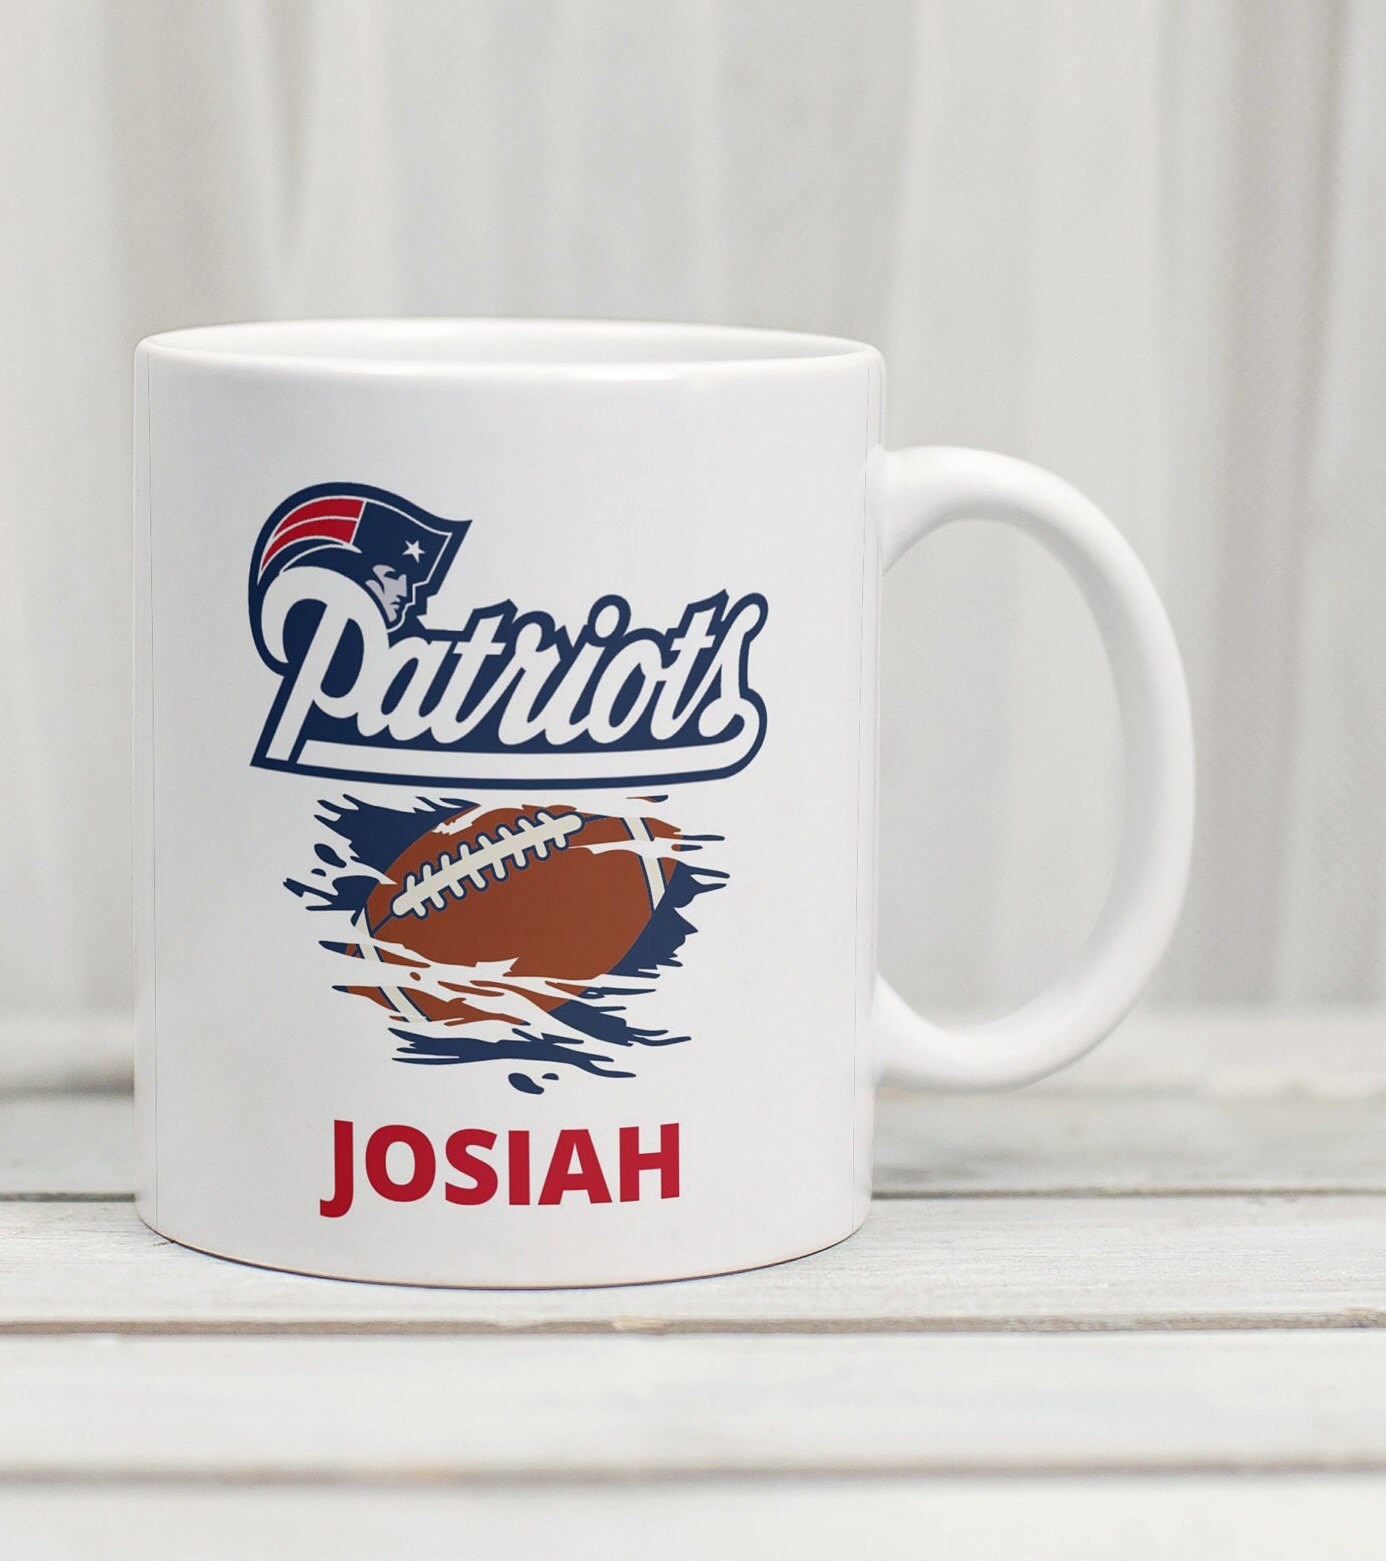 New England Patriots Sculpted Relief Coffee Mug